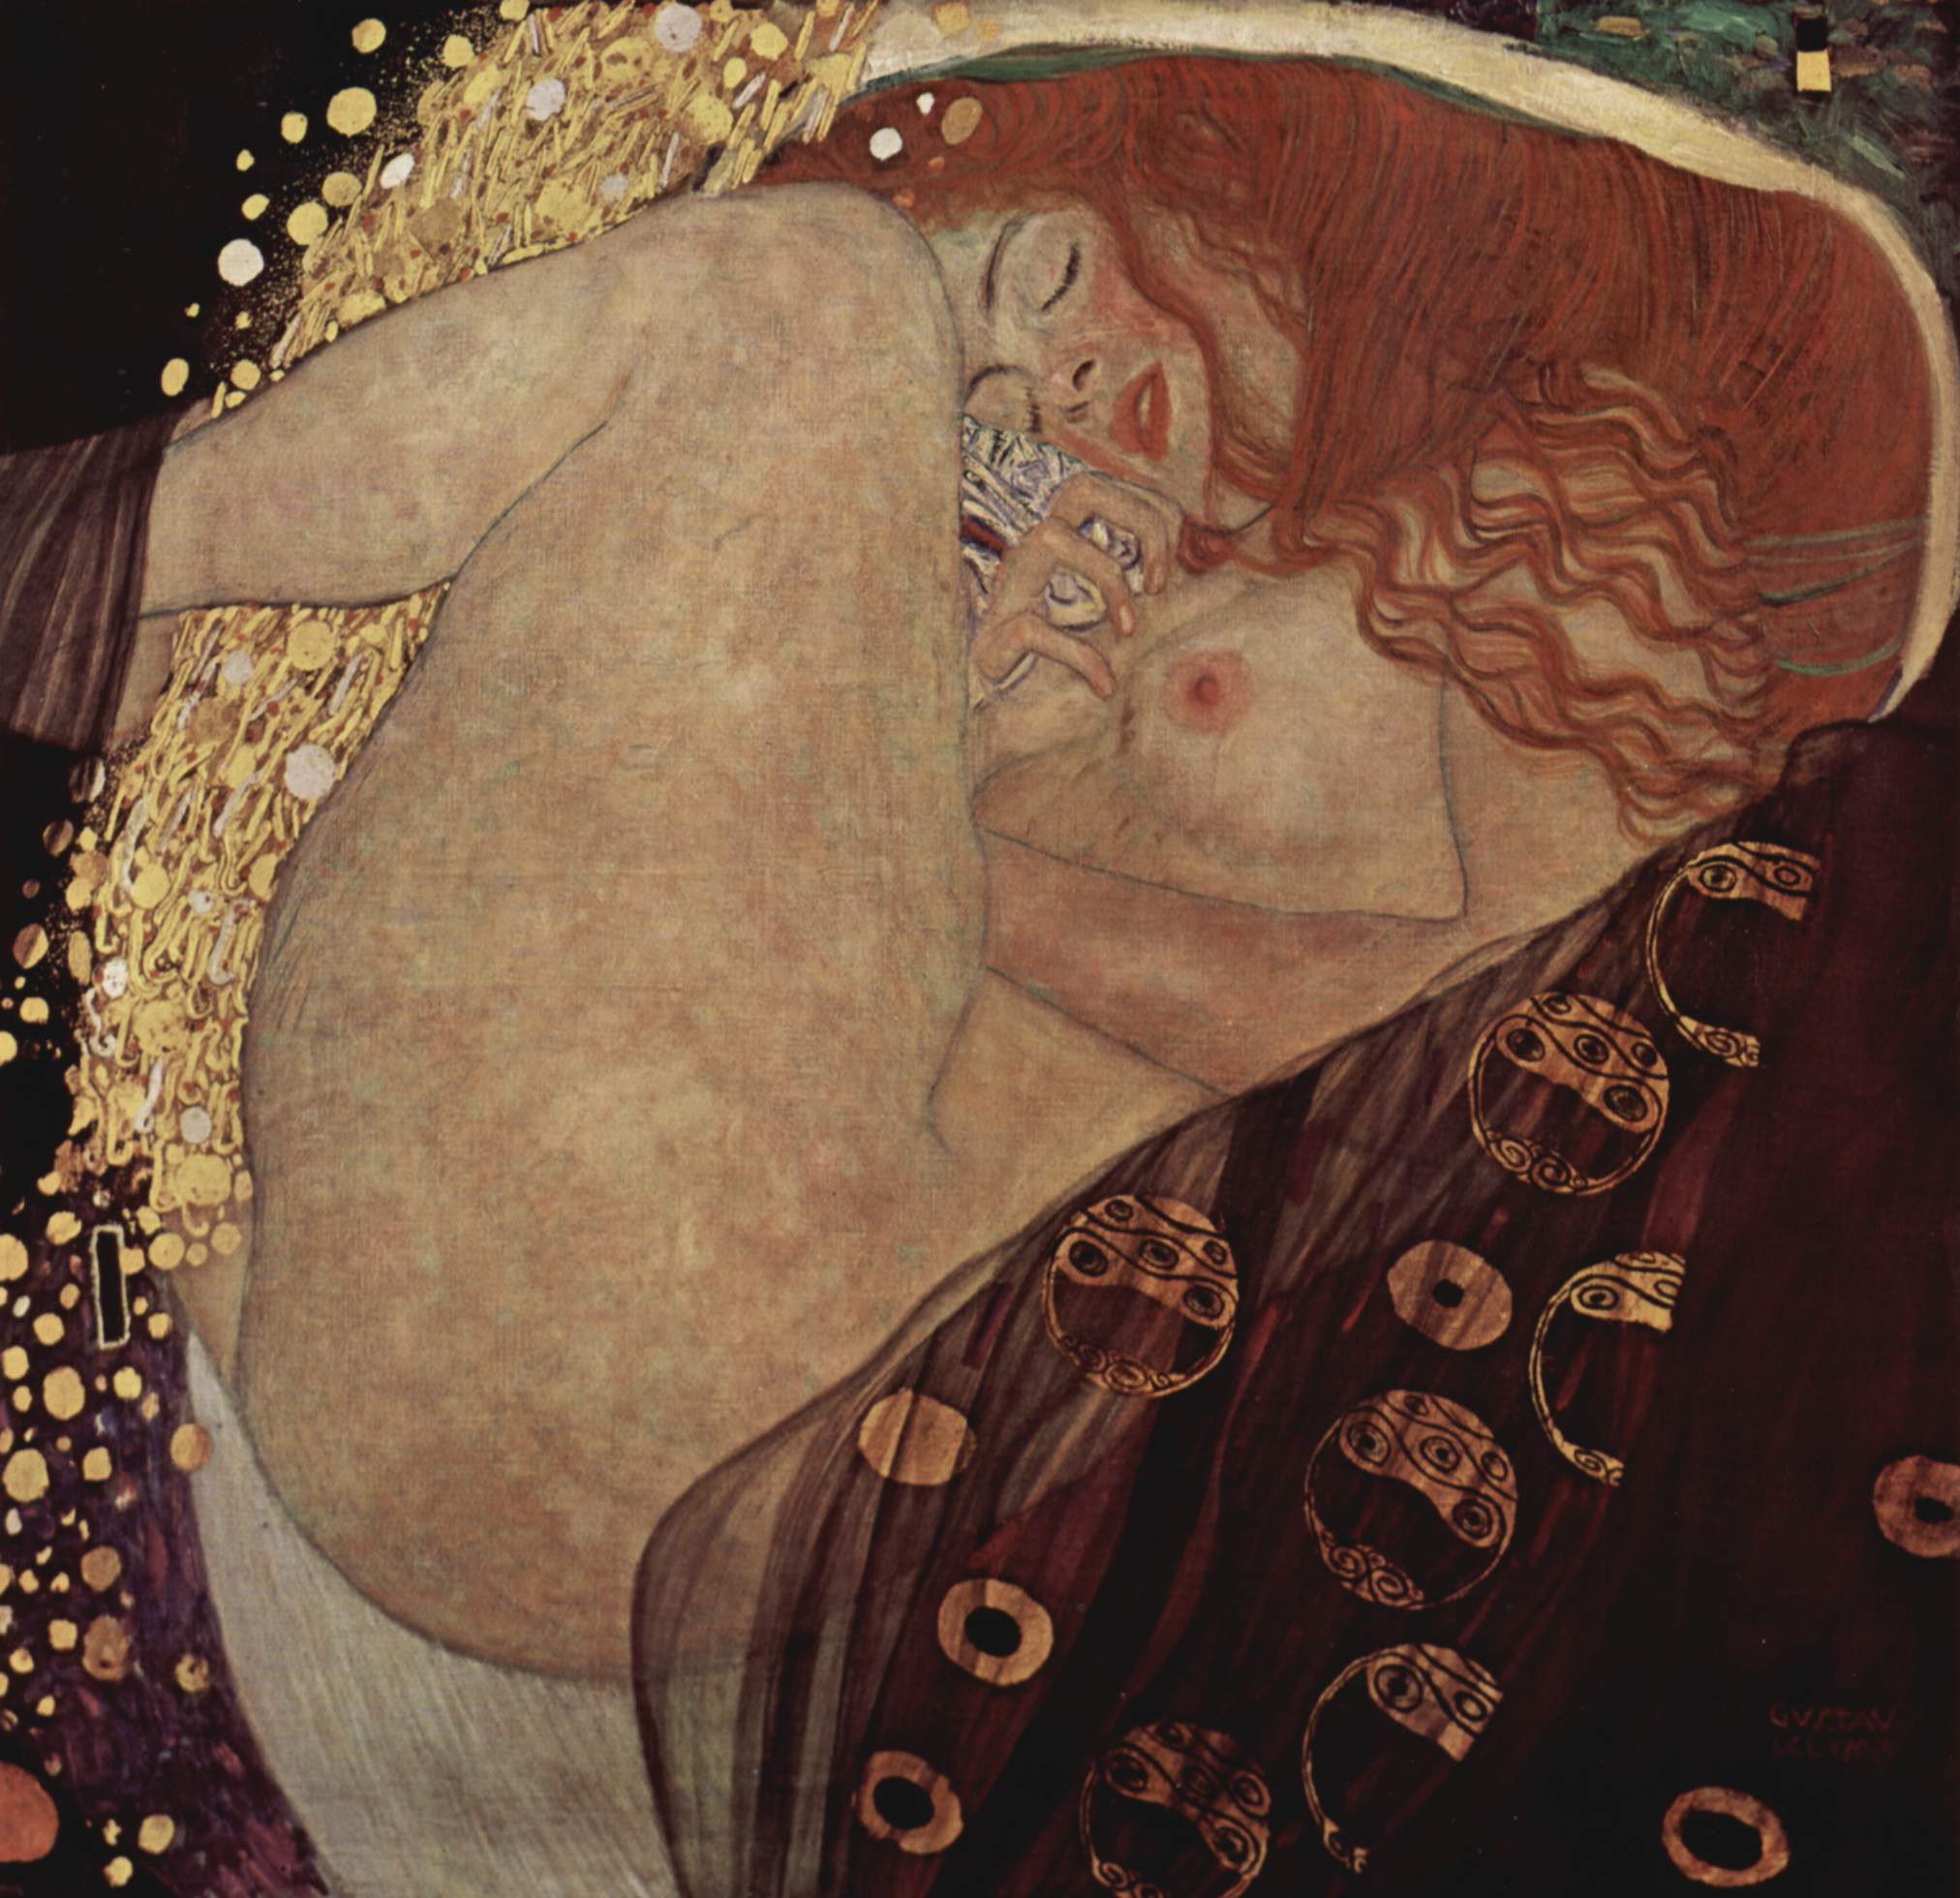 Những gương mặt đàn bà mãn nguyện trong tranh Klimt